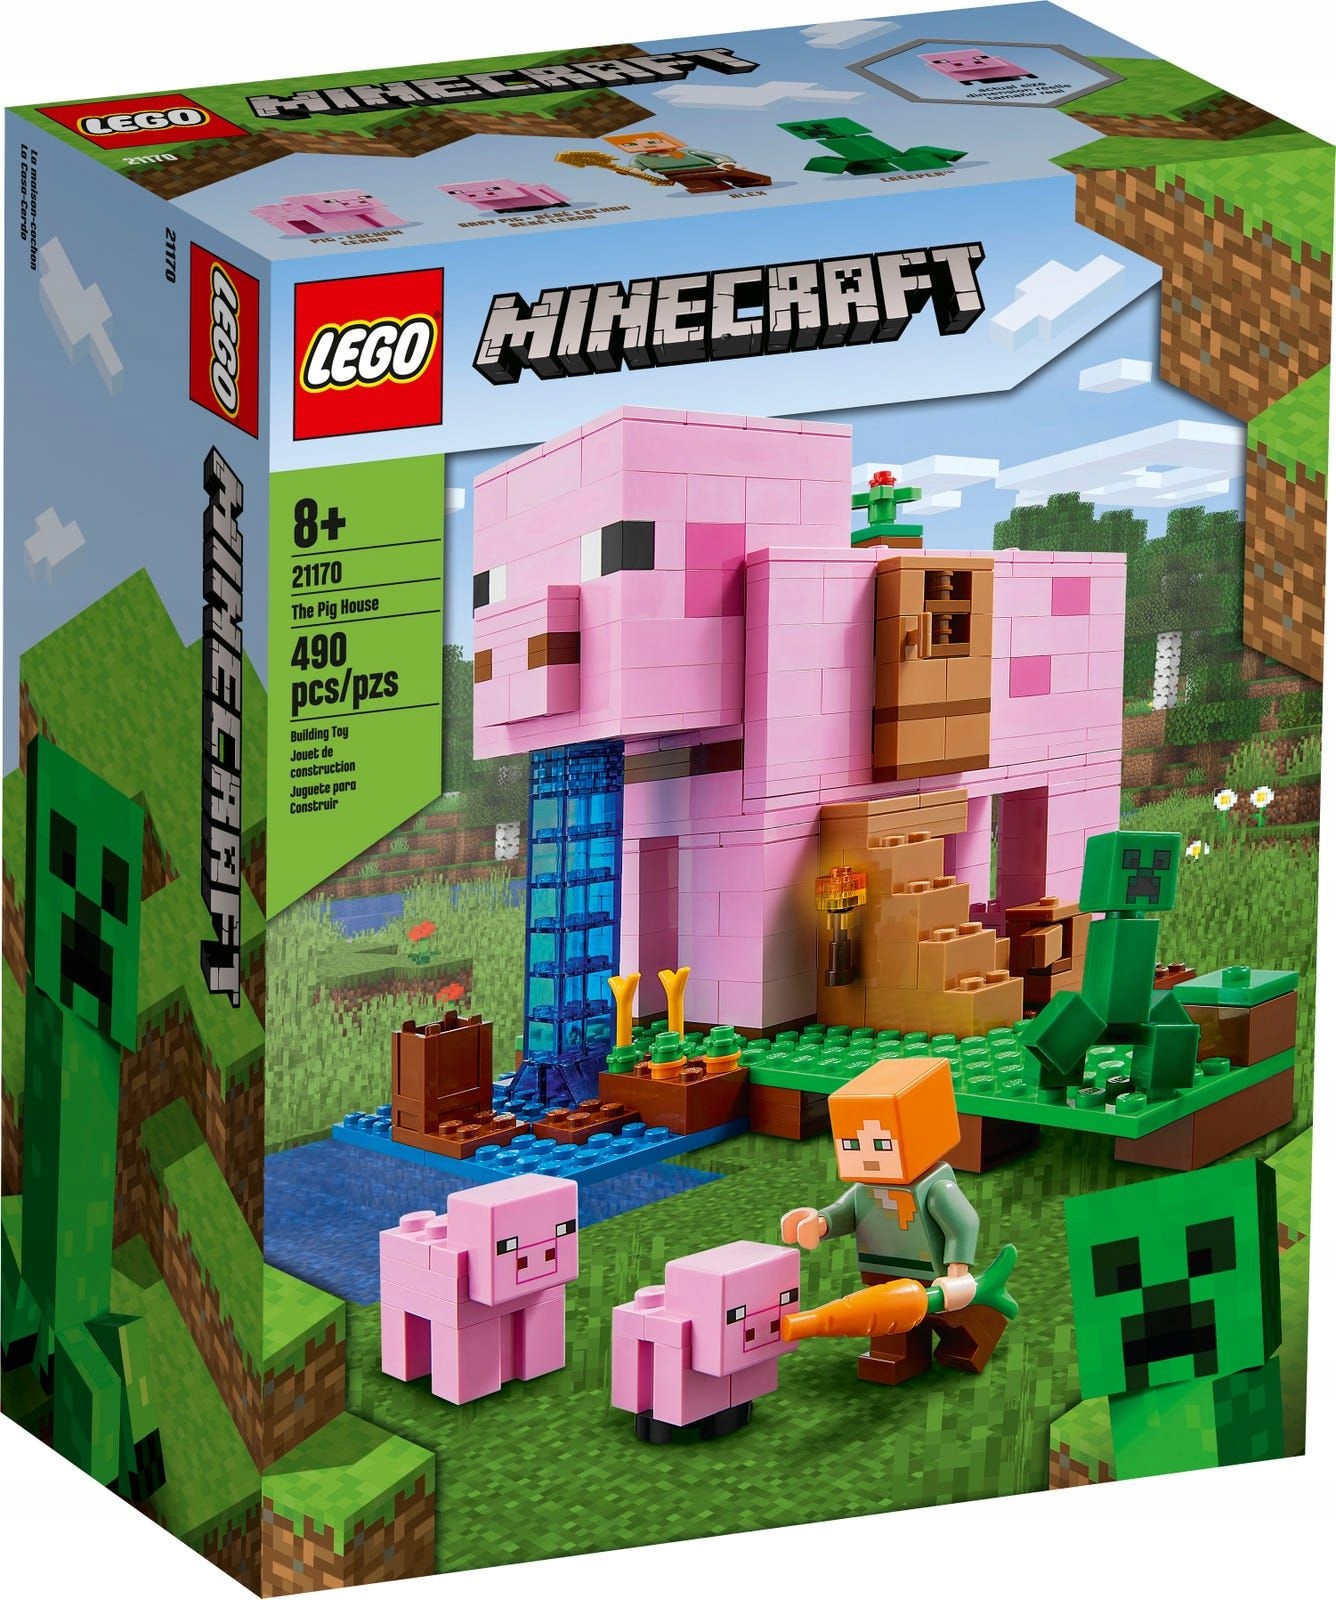 LEGO Minecraft 21170 Dom v tvare prasaťa